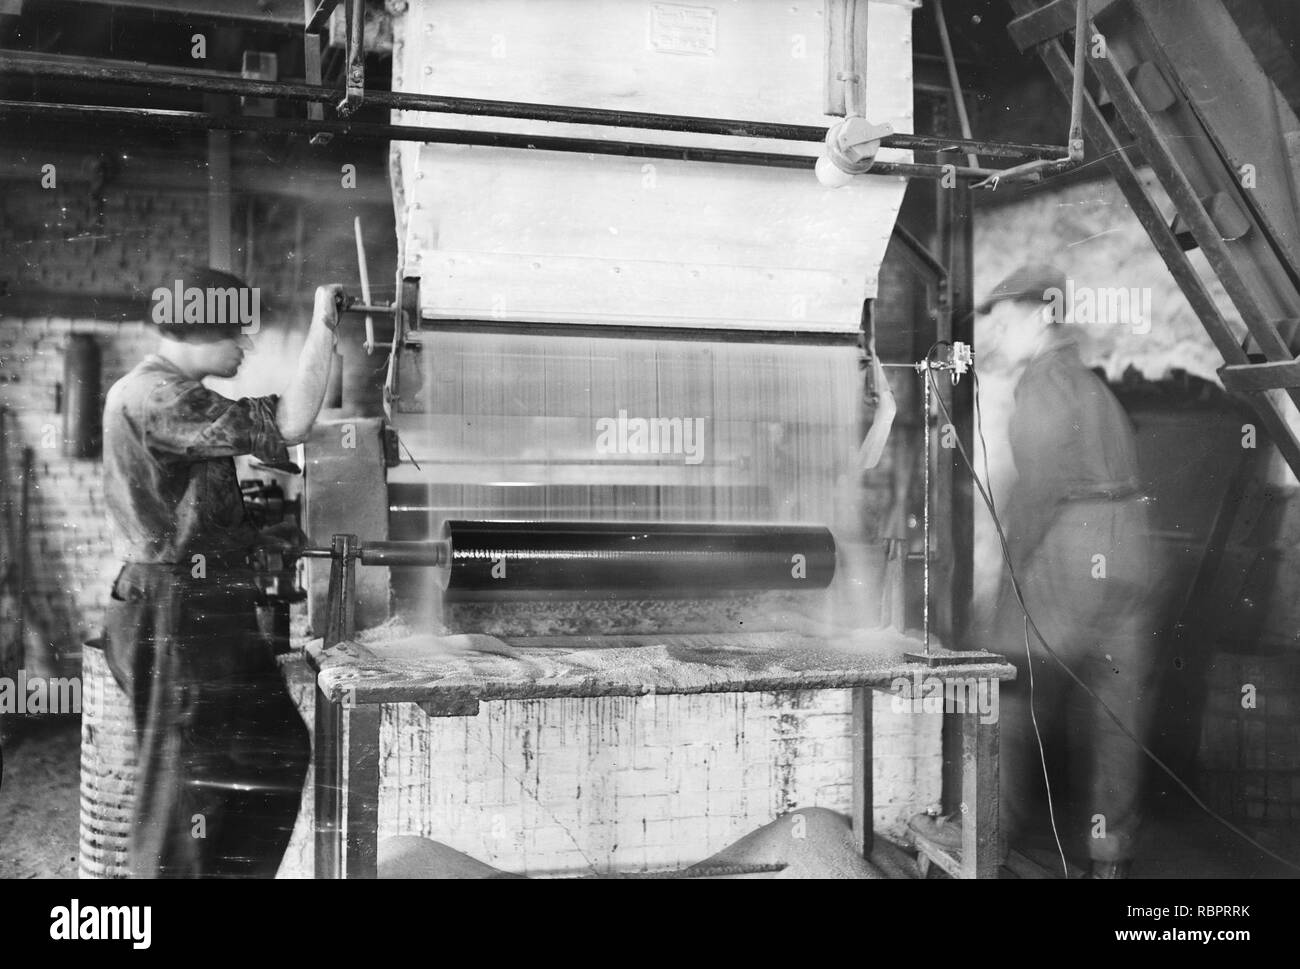 10 x 15 Opname van de fabricage van asfaltpapier Bij de NV Biteer te Huizen, Bestanddeelnr 256-0543. Stockfoto